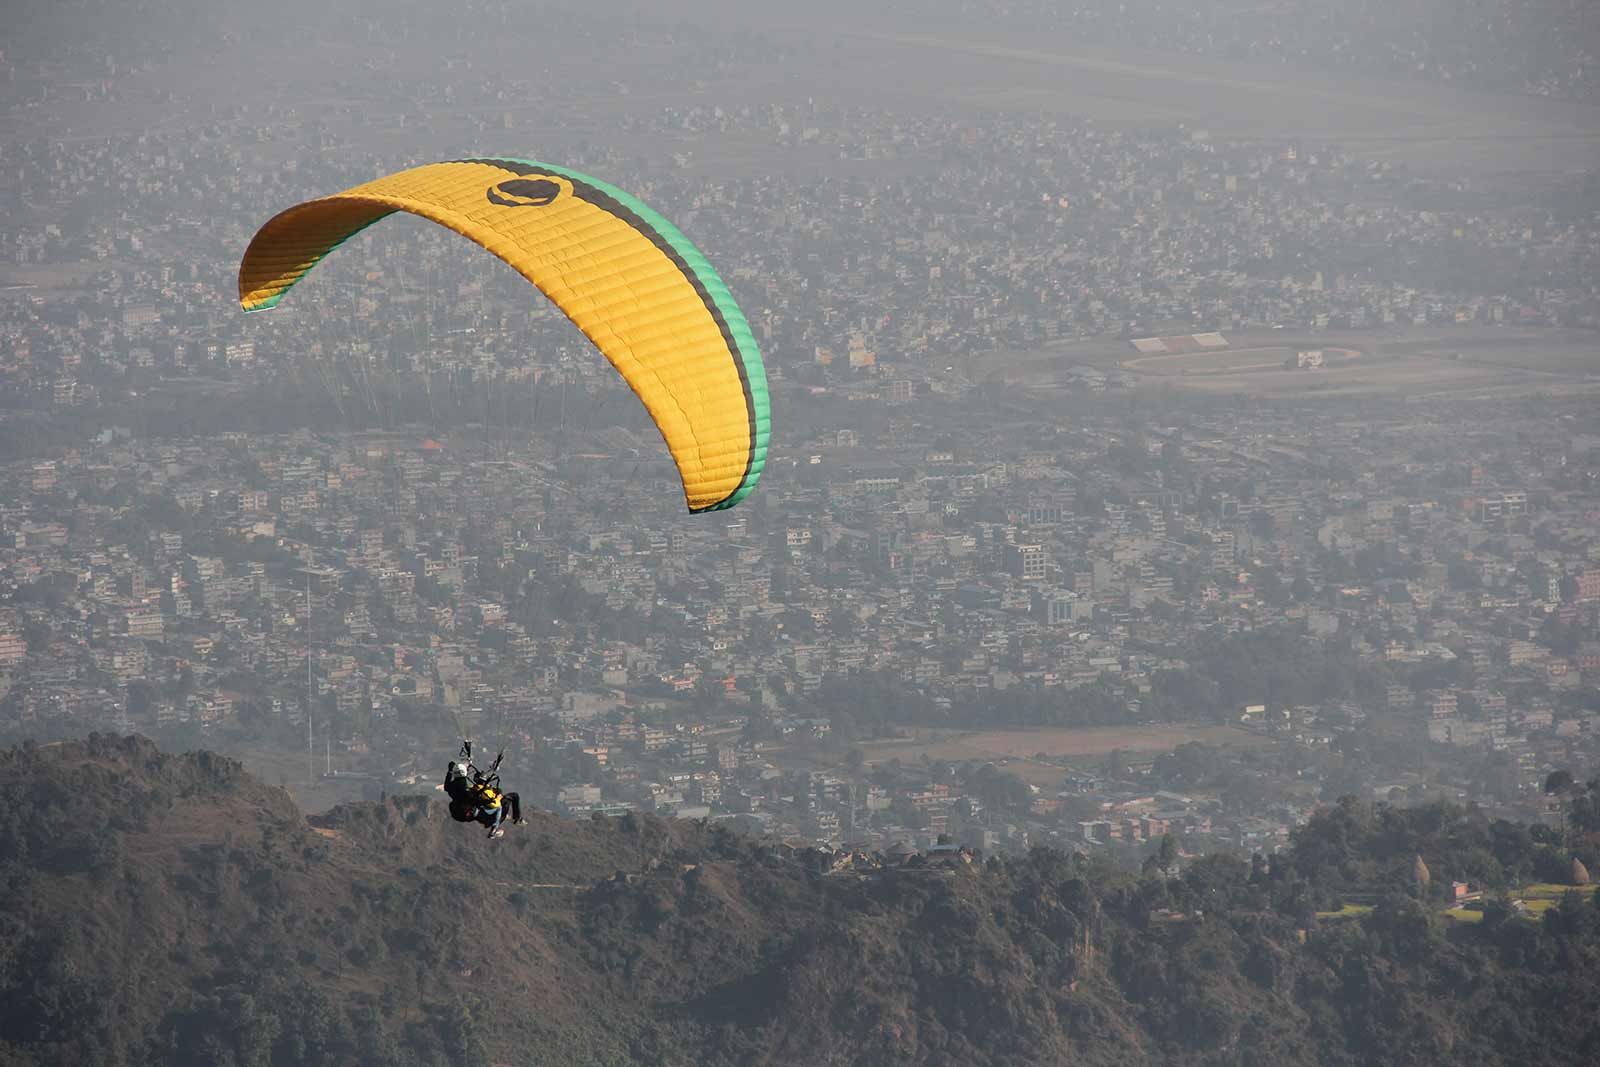 「等风来:博卡拉滑翔伞飞翔」尼泊尔随记(贰)